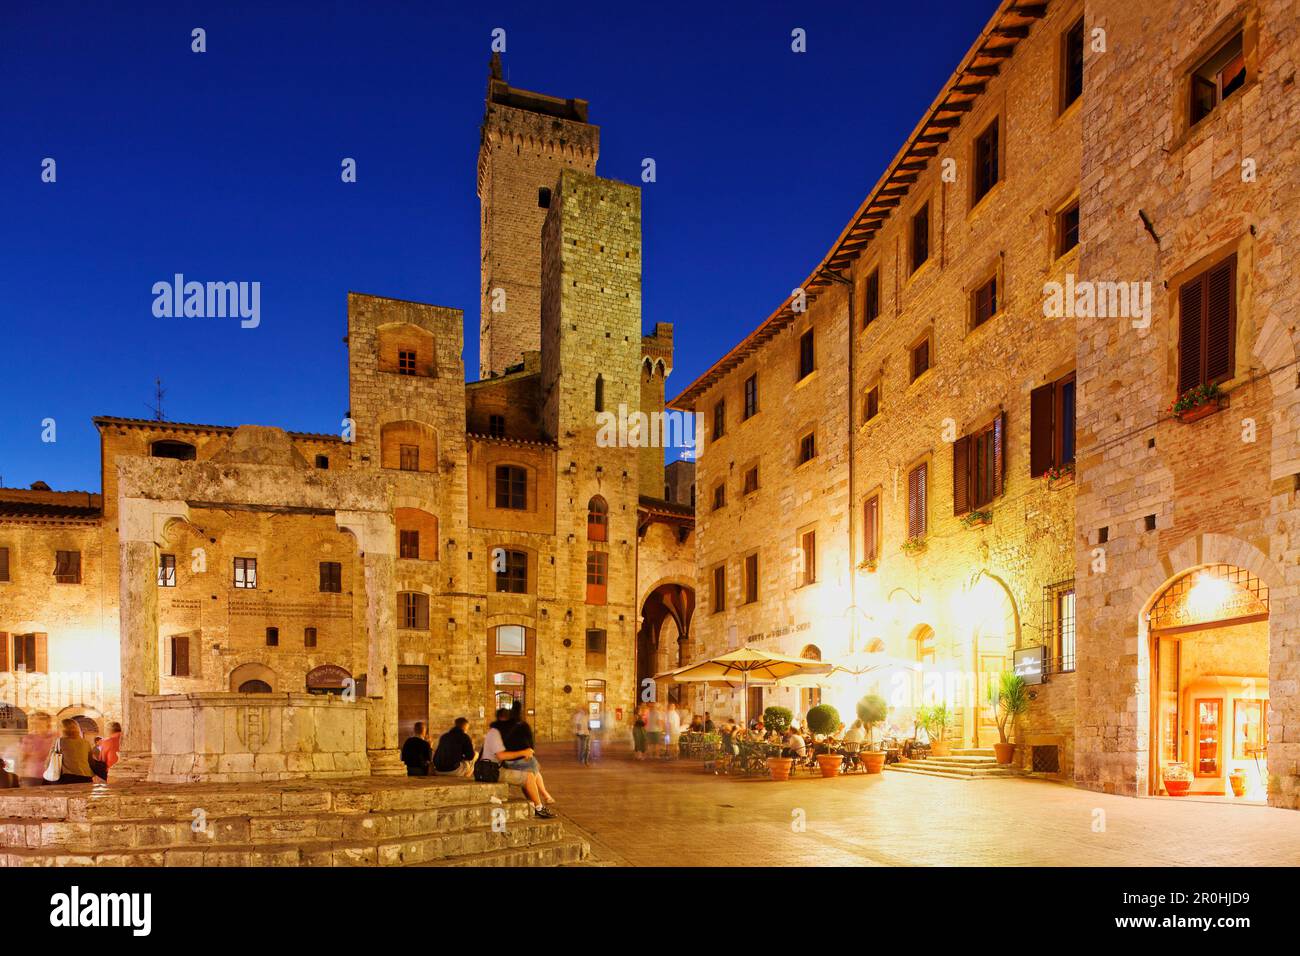 Piazza della Cisterna, San Gimignano, Tuscany, Italy Stock Photo